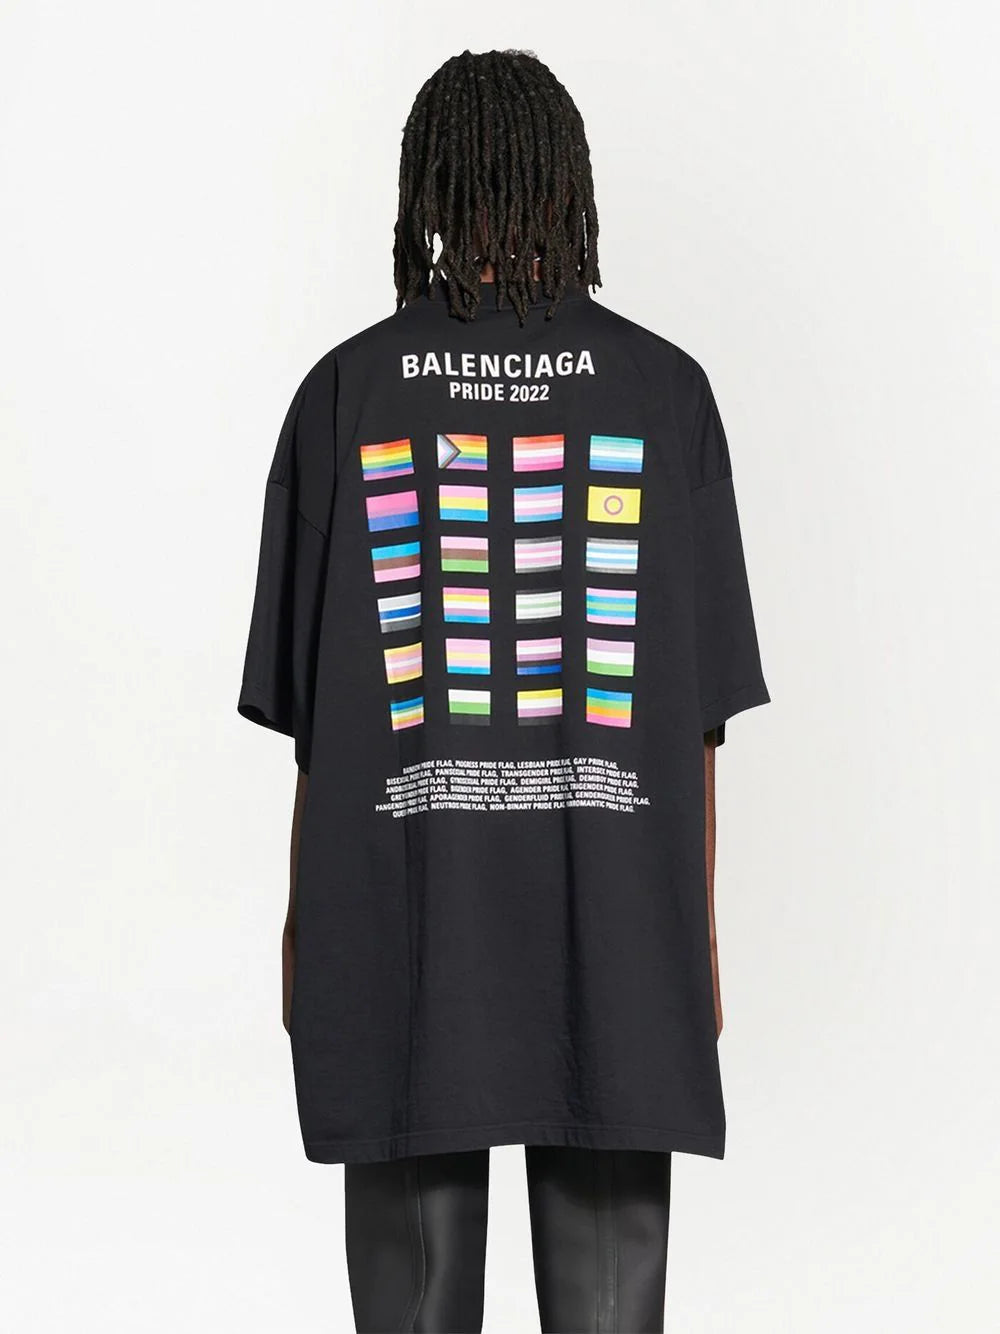 8 Best Balenciaga t shirt ideas  balenciaga t shirt balenciaga fashion